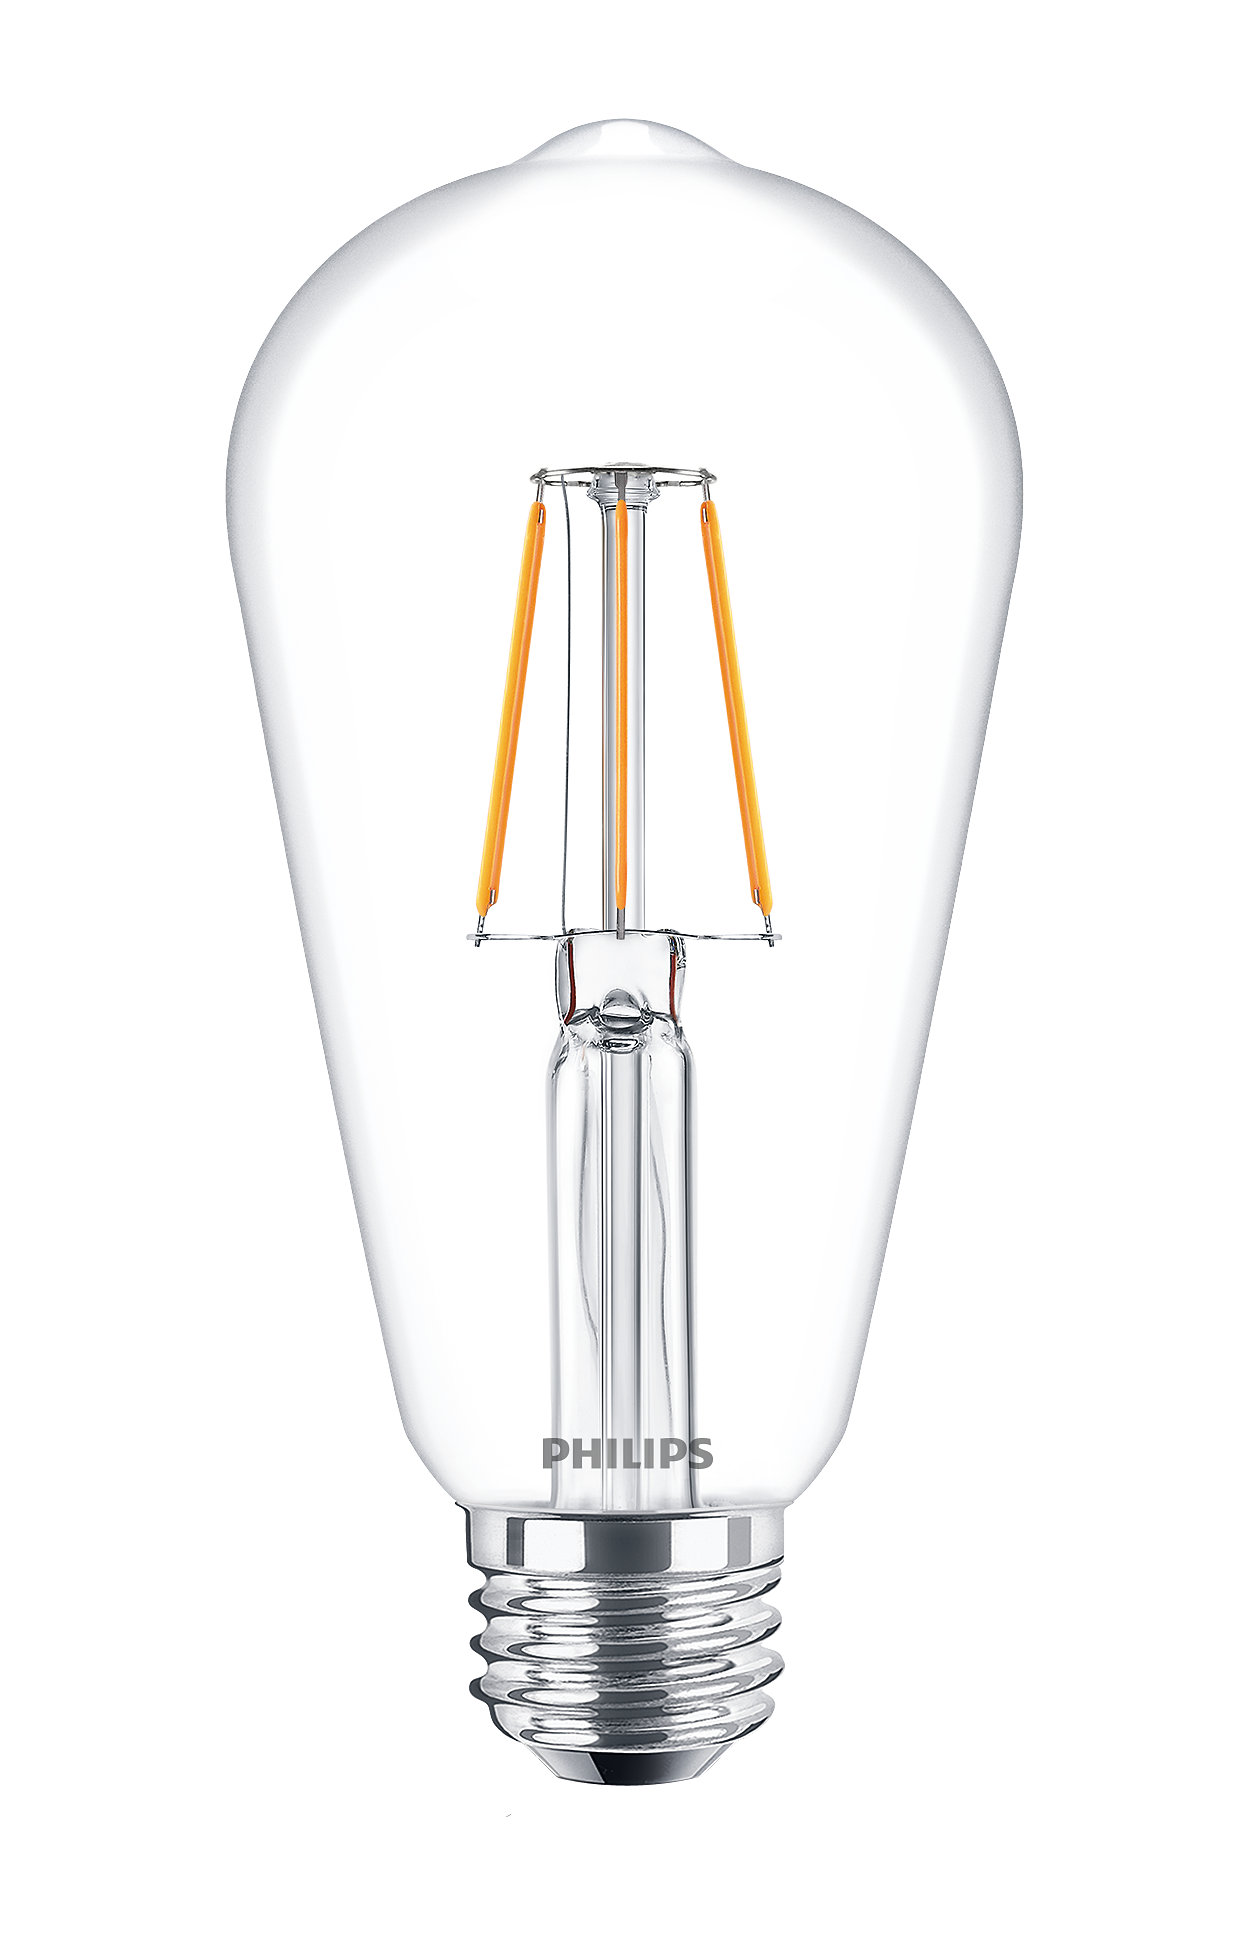 Lămpi cu becuri LEDbulbs clasice pentru iluminat decorativ